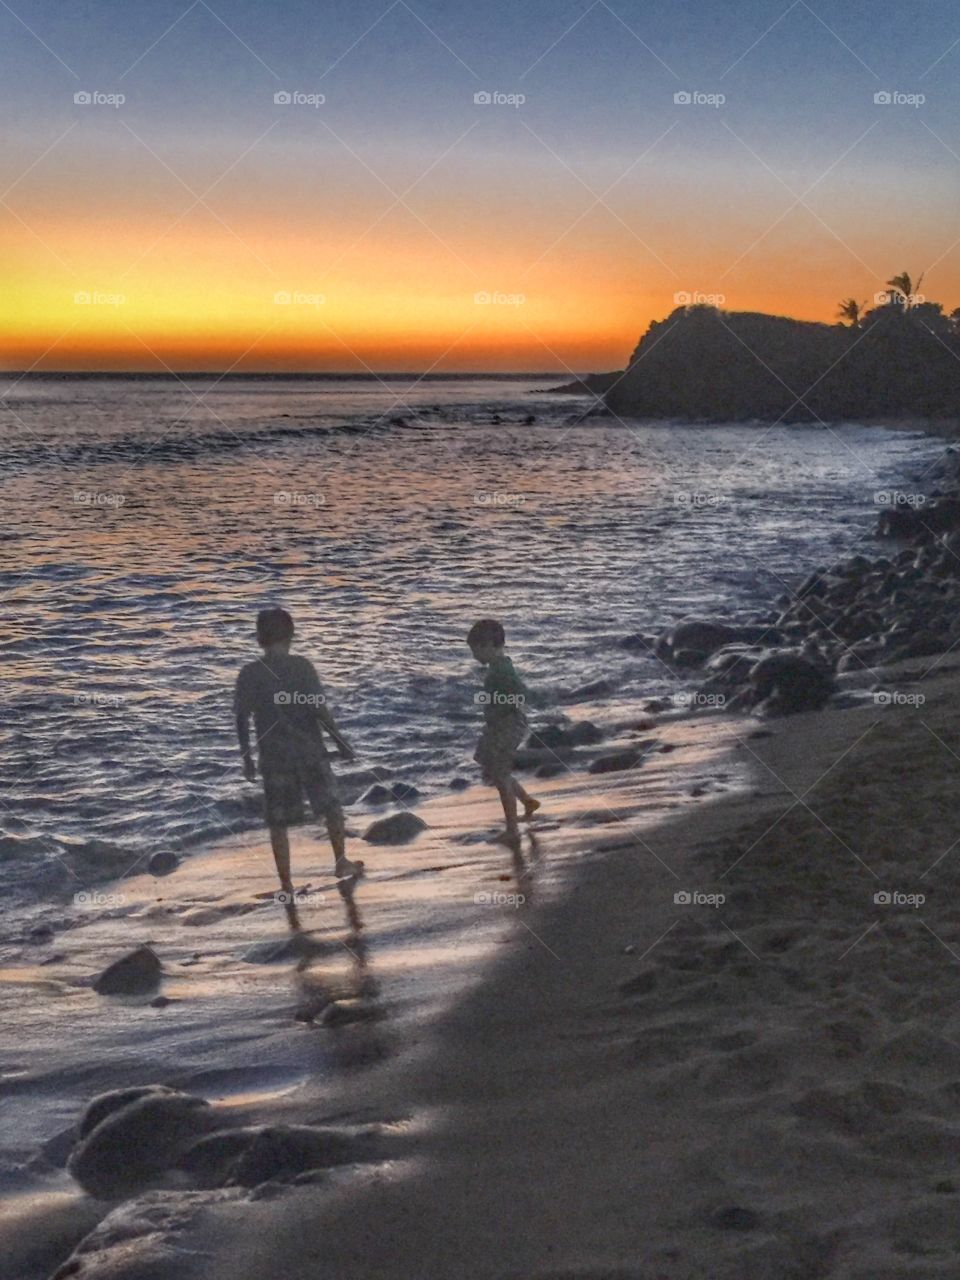 Kids on the beach at dusk